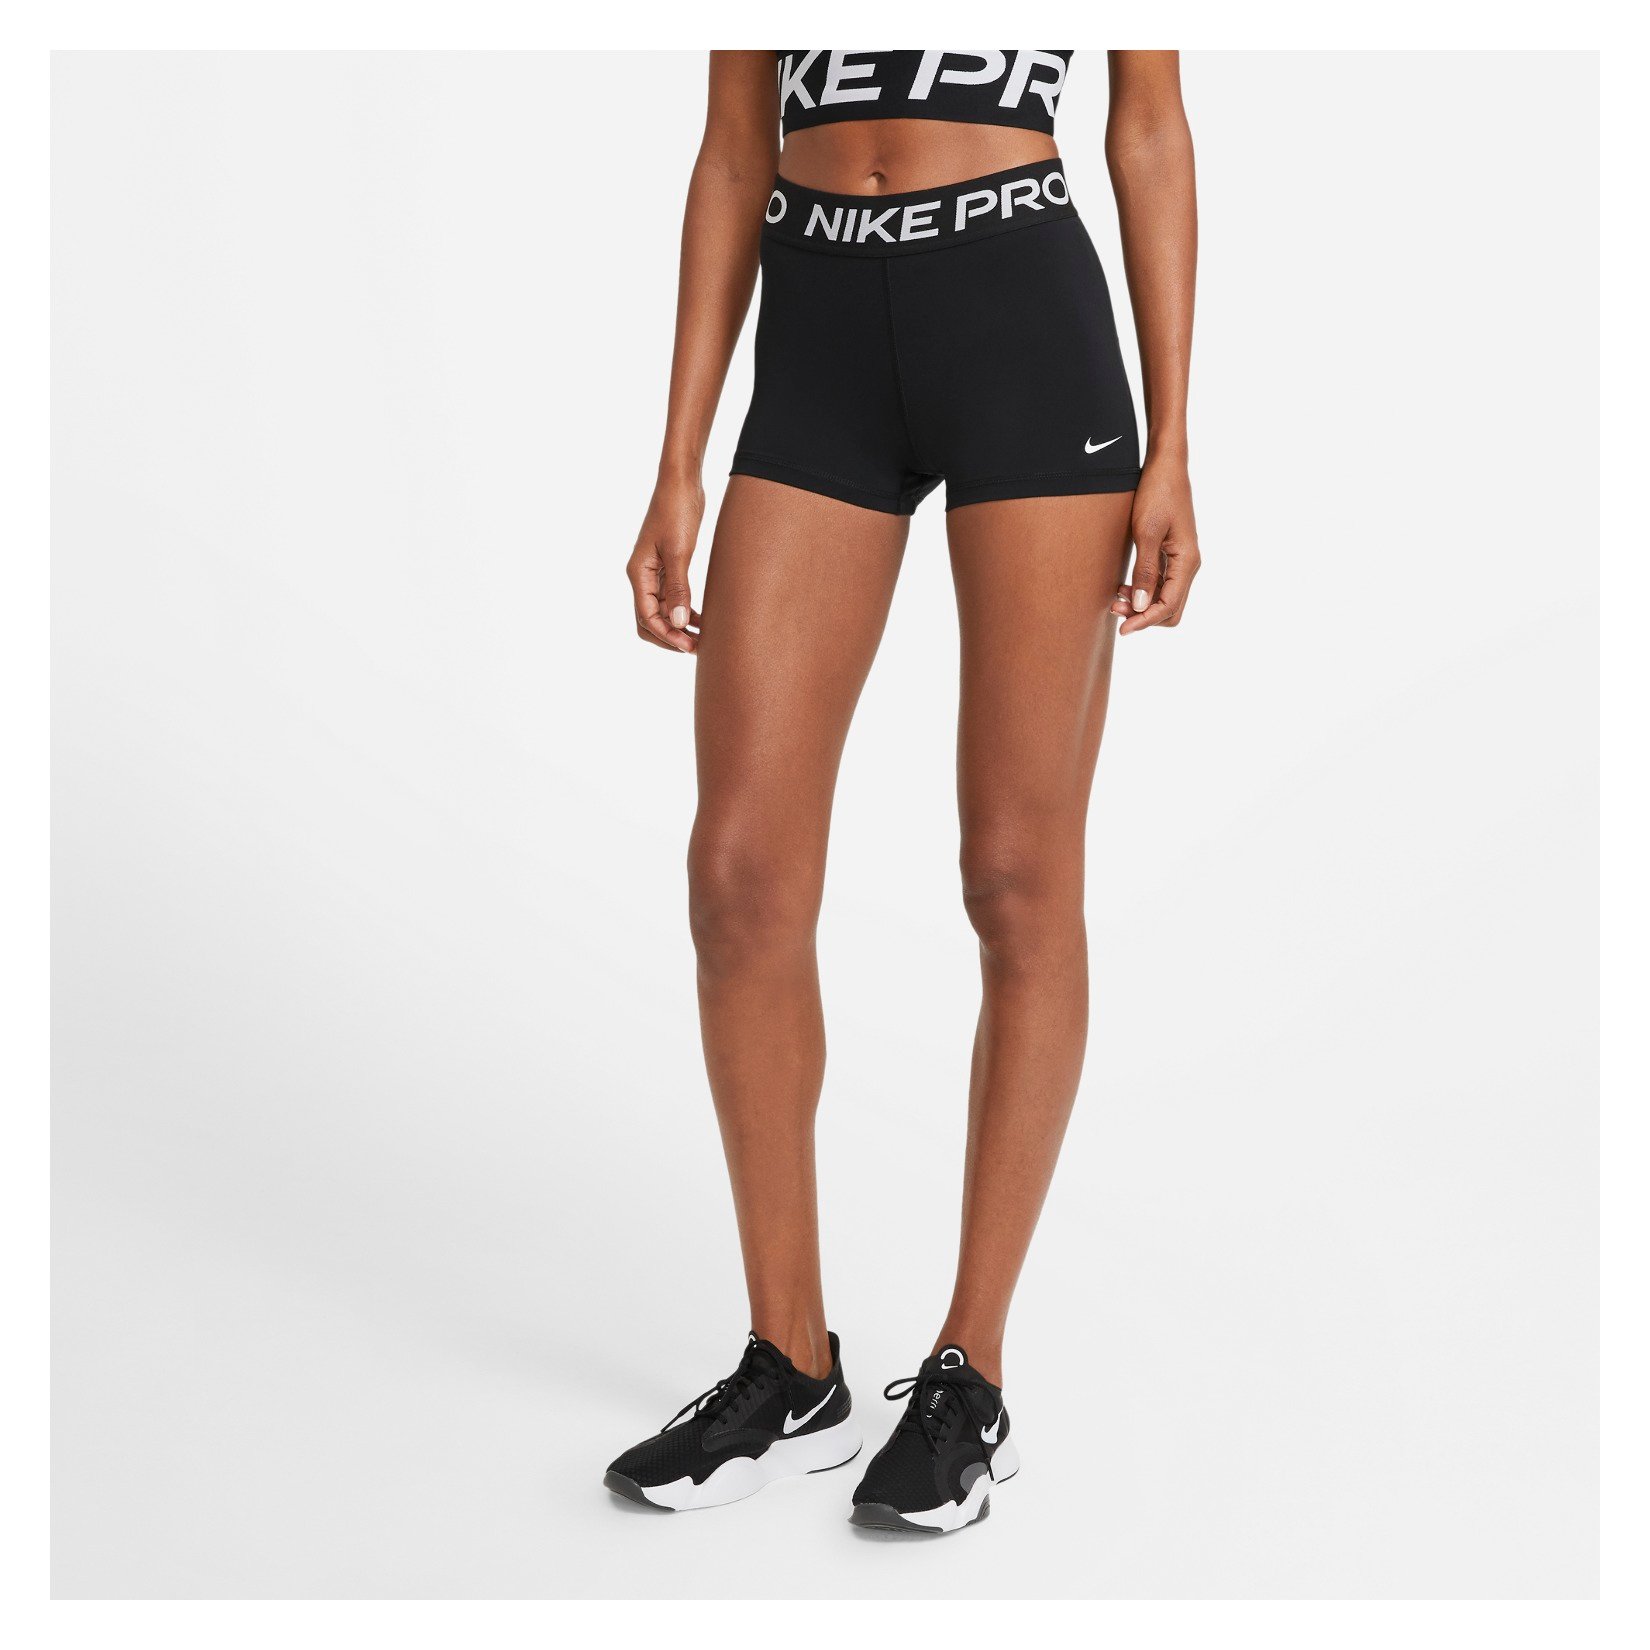 Seraph Stikke ud halvleder Nike Pro Womens 3 Inch Shorts - Kitlocker.com